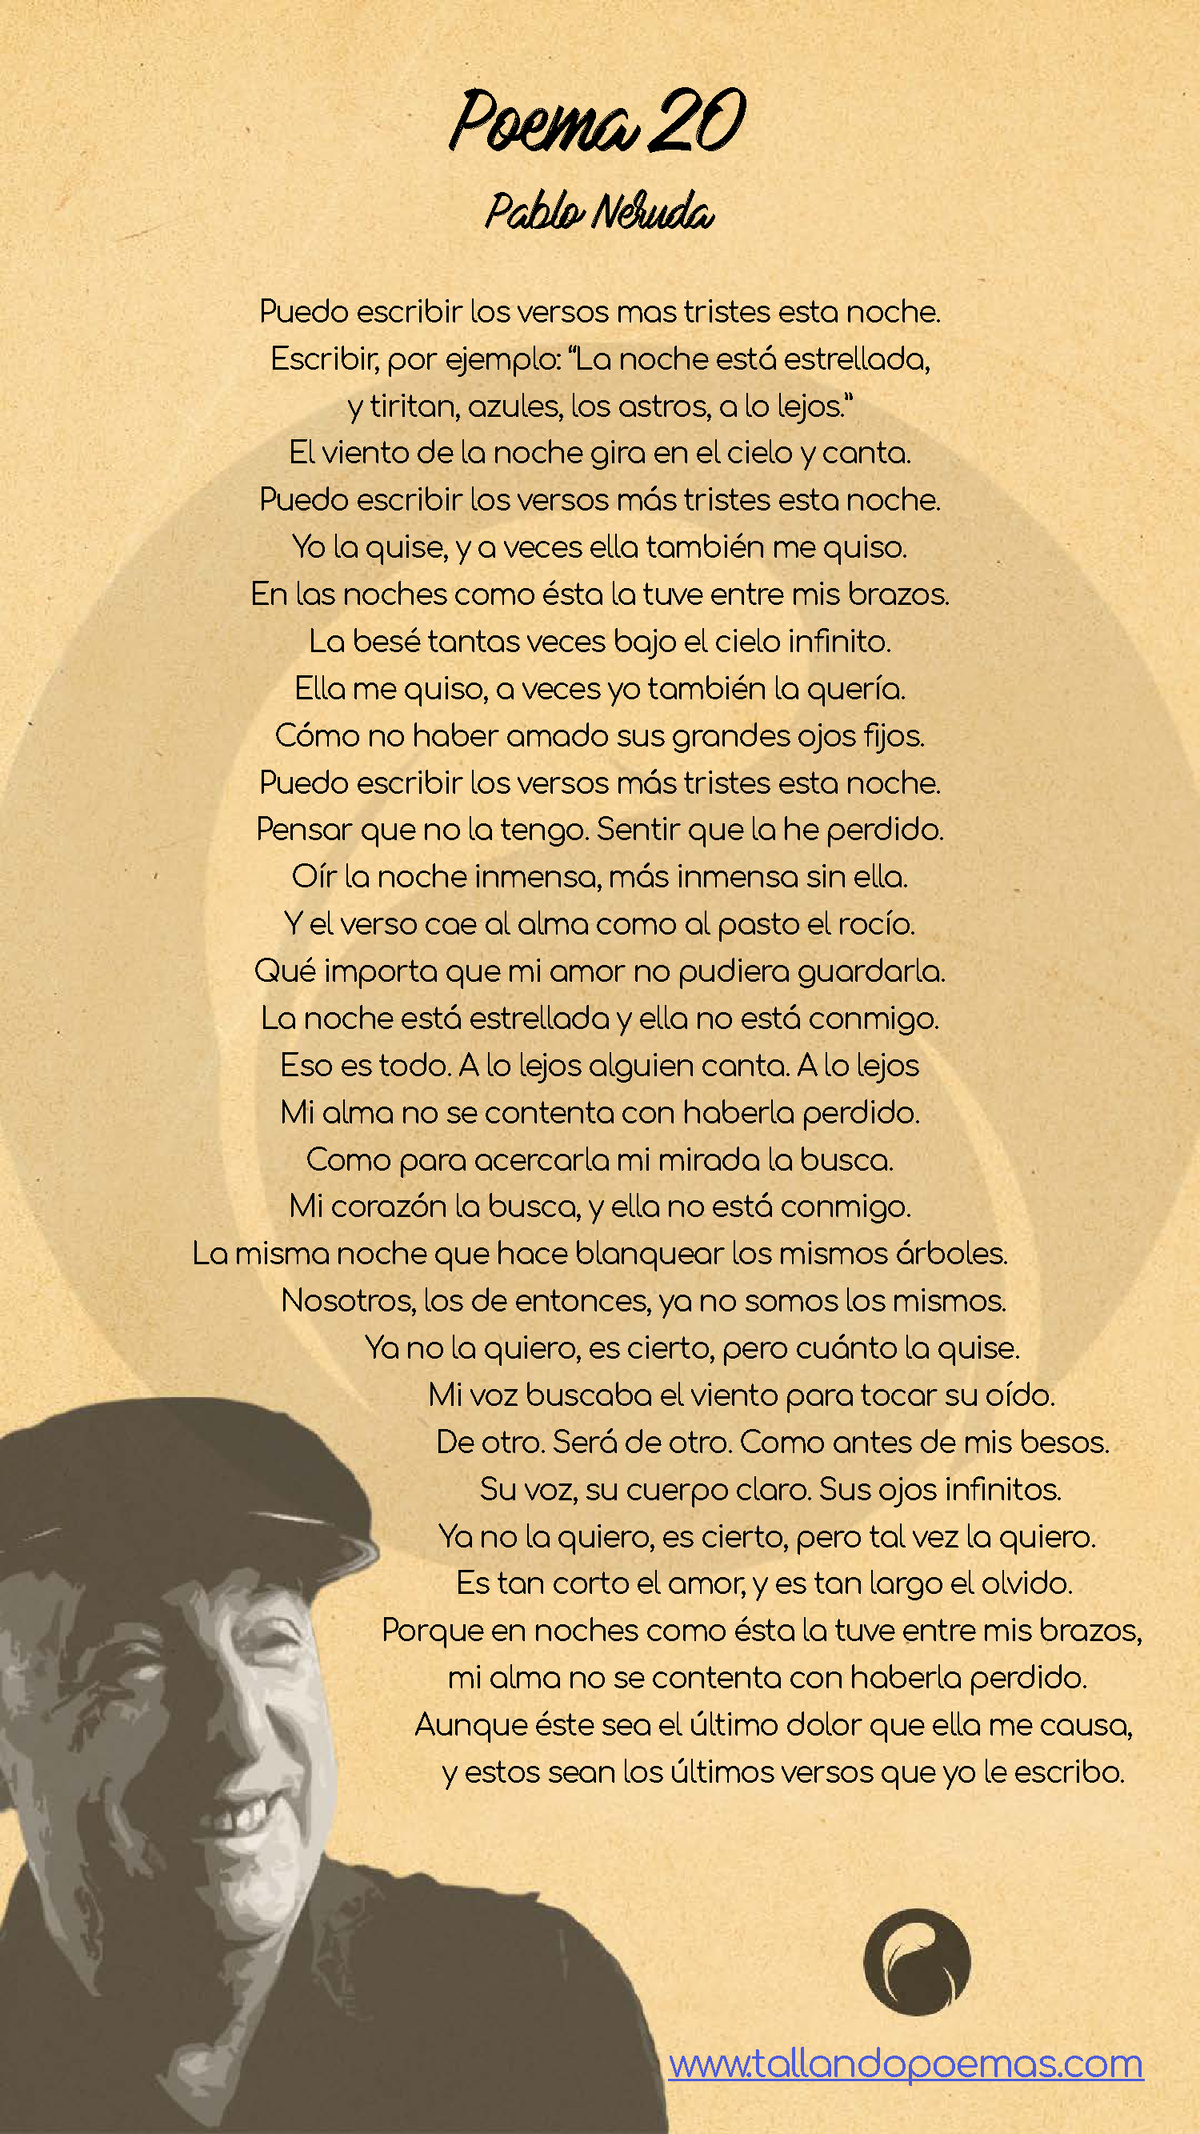 Pablo Neruda: Descarga el poema 20 completo en PDF y sumérgete en su poderosa poesía